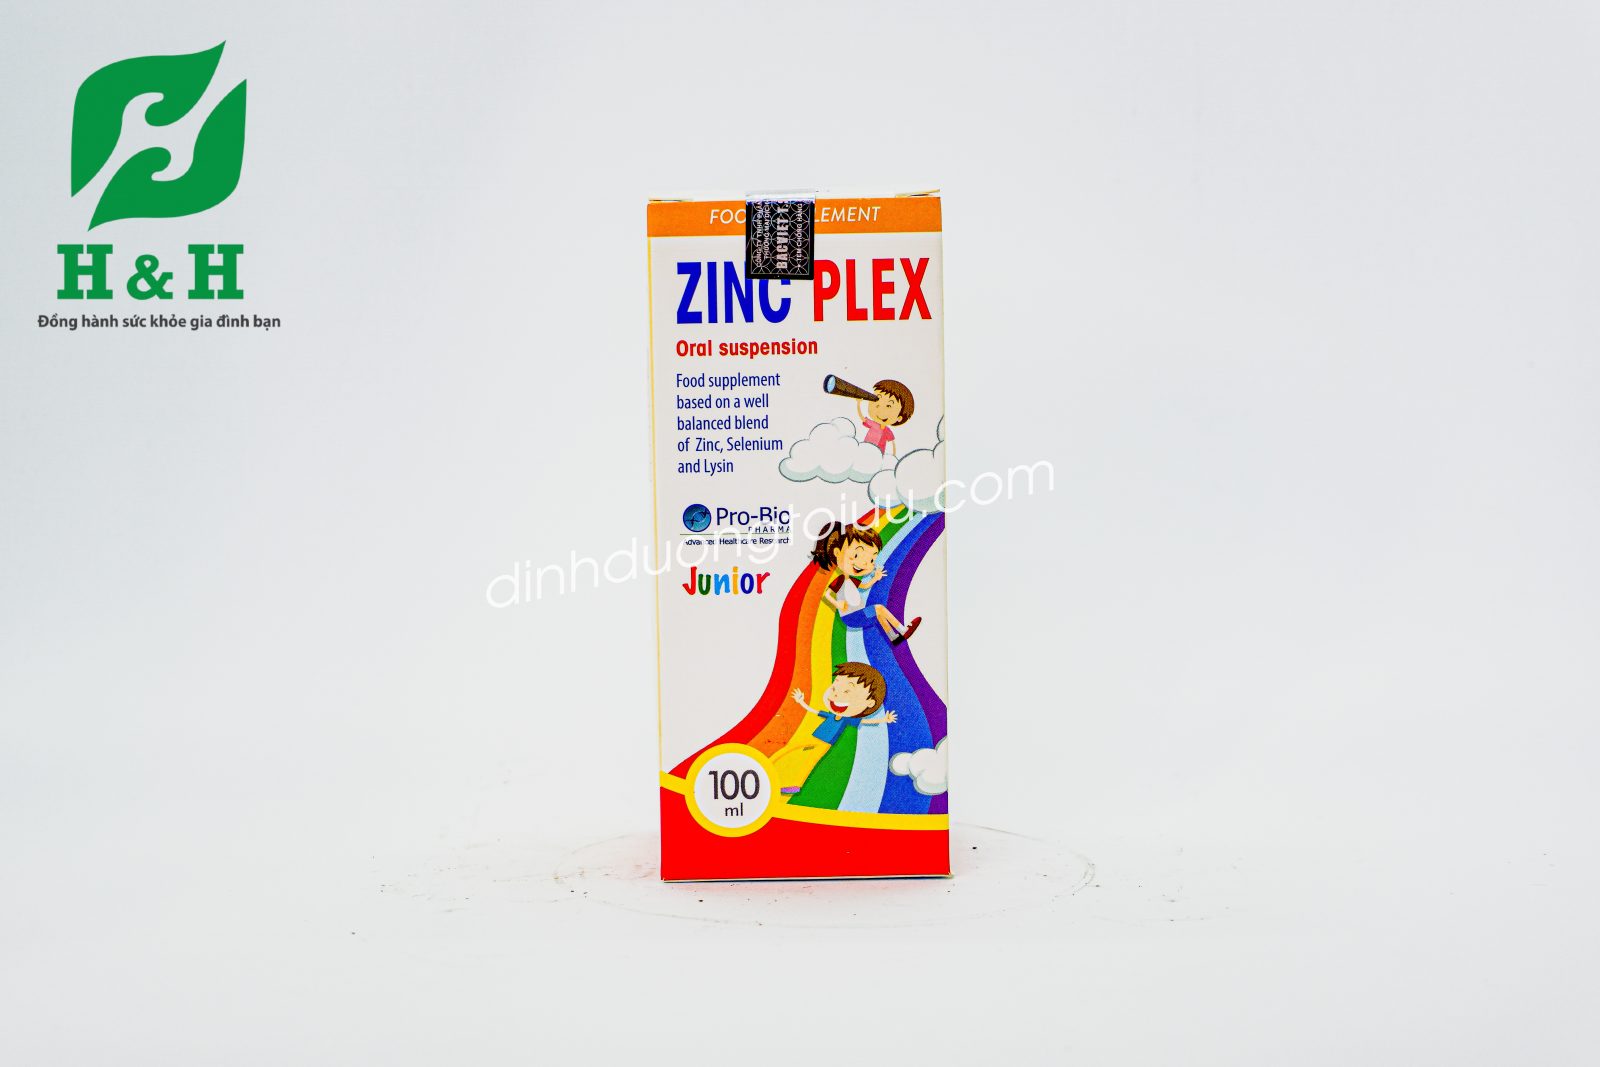 Thực phẩm bảo vệ sức khỏe ZinC Plex - Sản phẩm giúp bổ sung Kẽm, Lysin, Selen và dưỡng chất có lợi cho cơ thể giúp trẻ tăng sức đề kháng, kích thích tiêu hóa